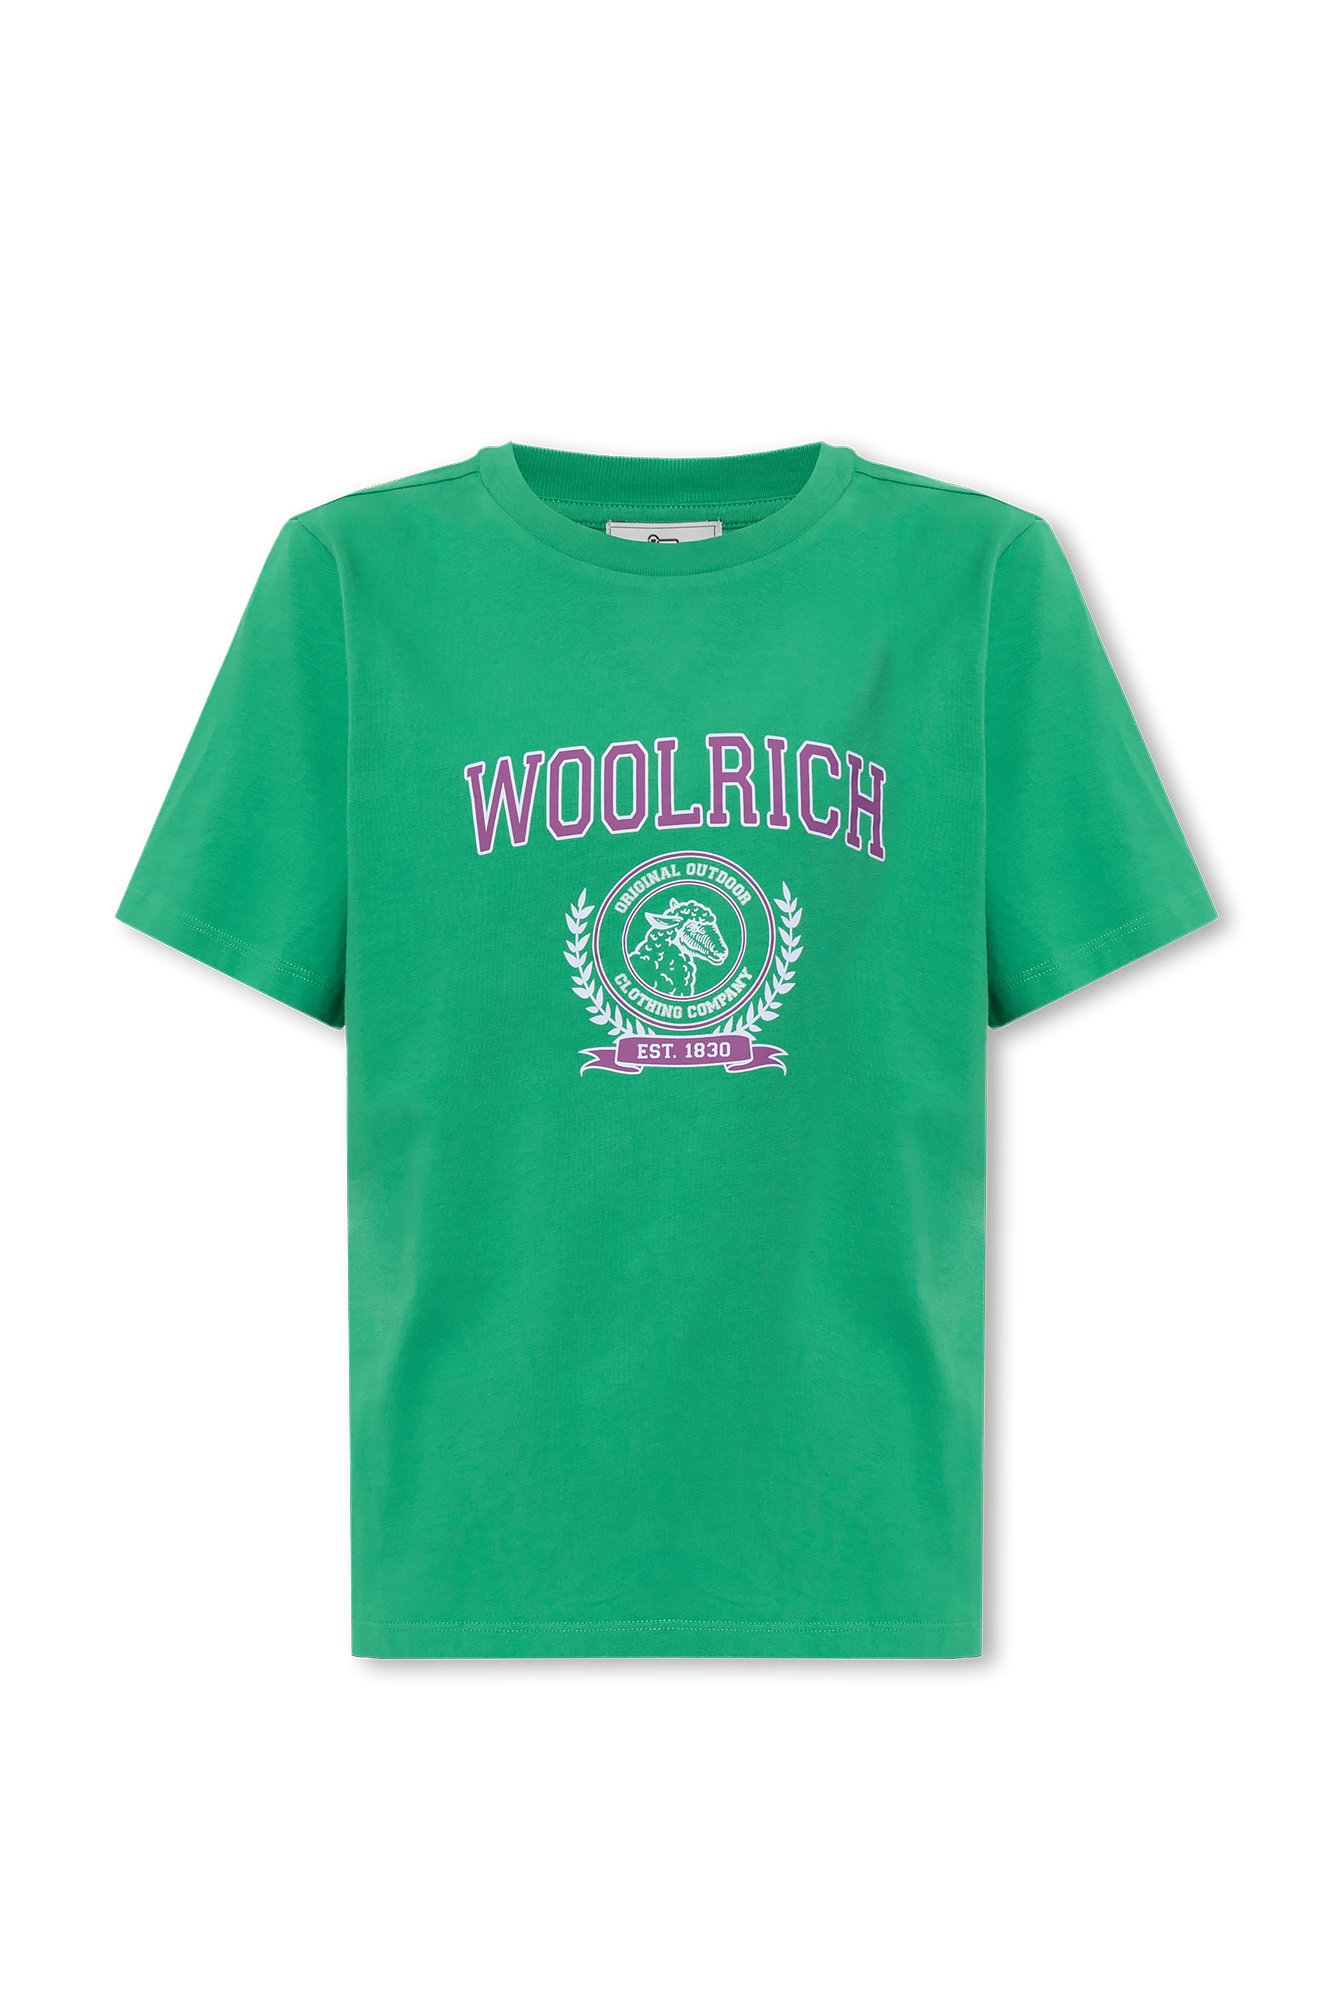 Woolrich Print Shirt -  Canada